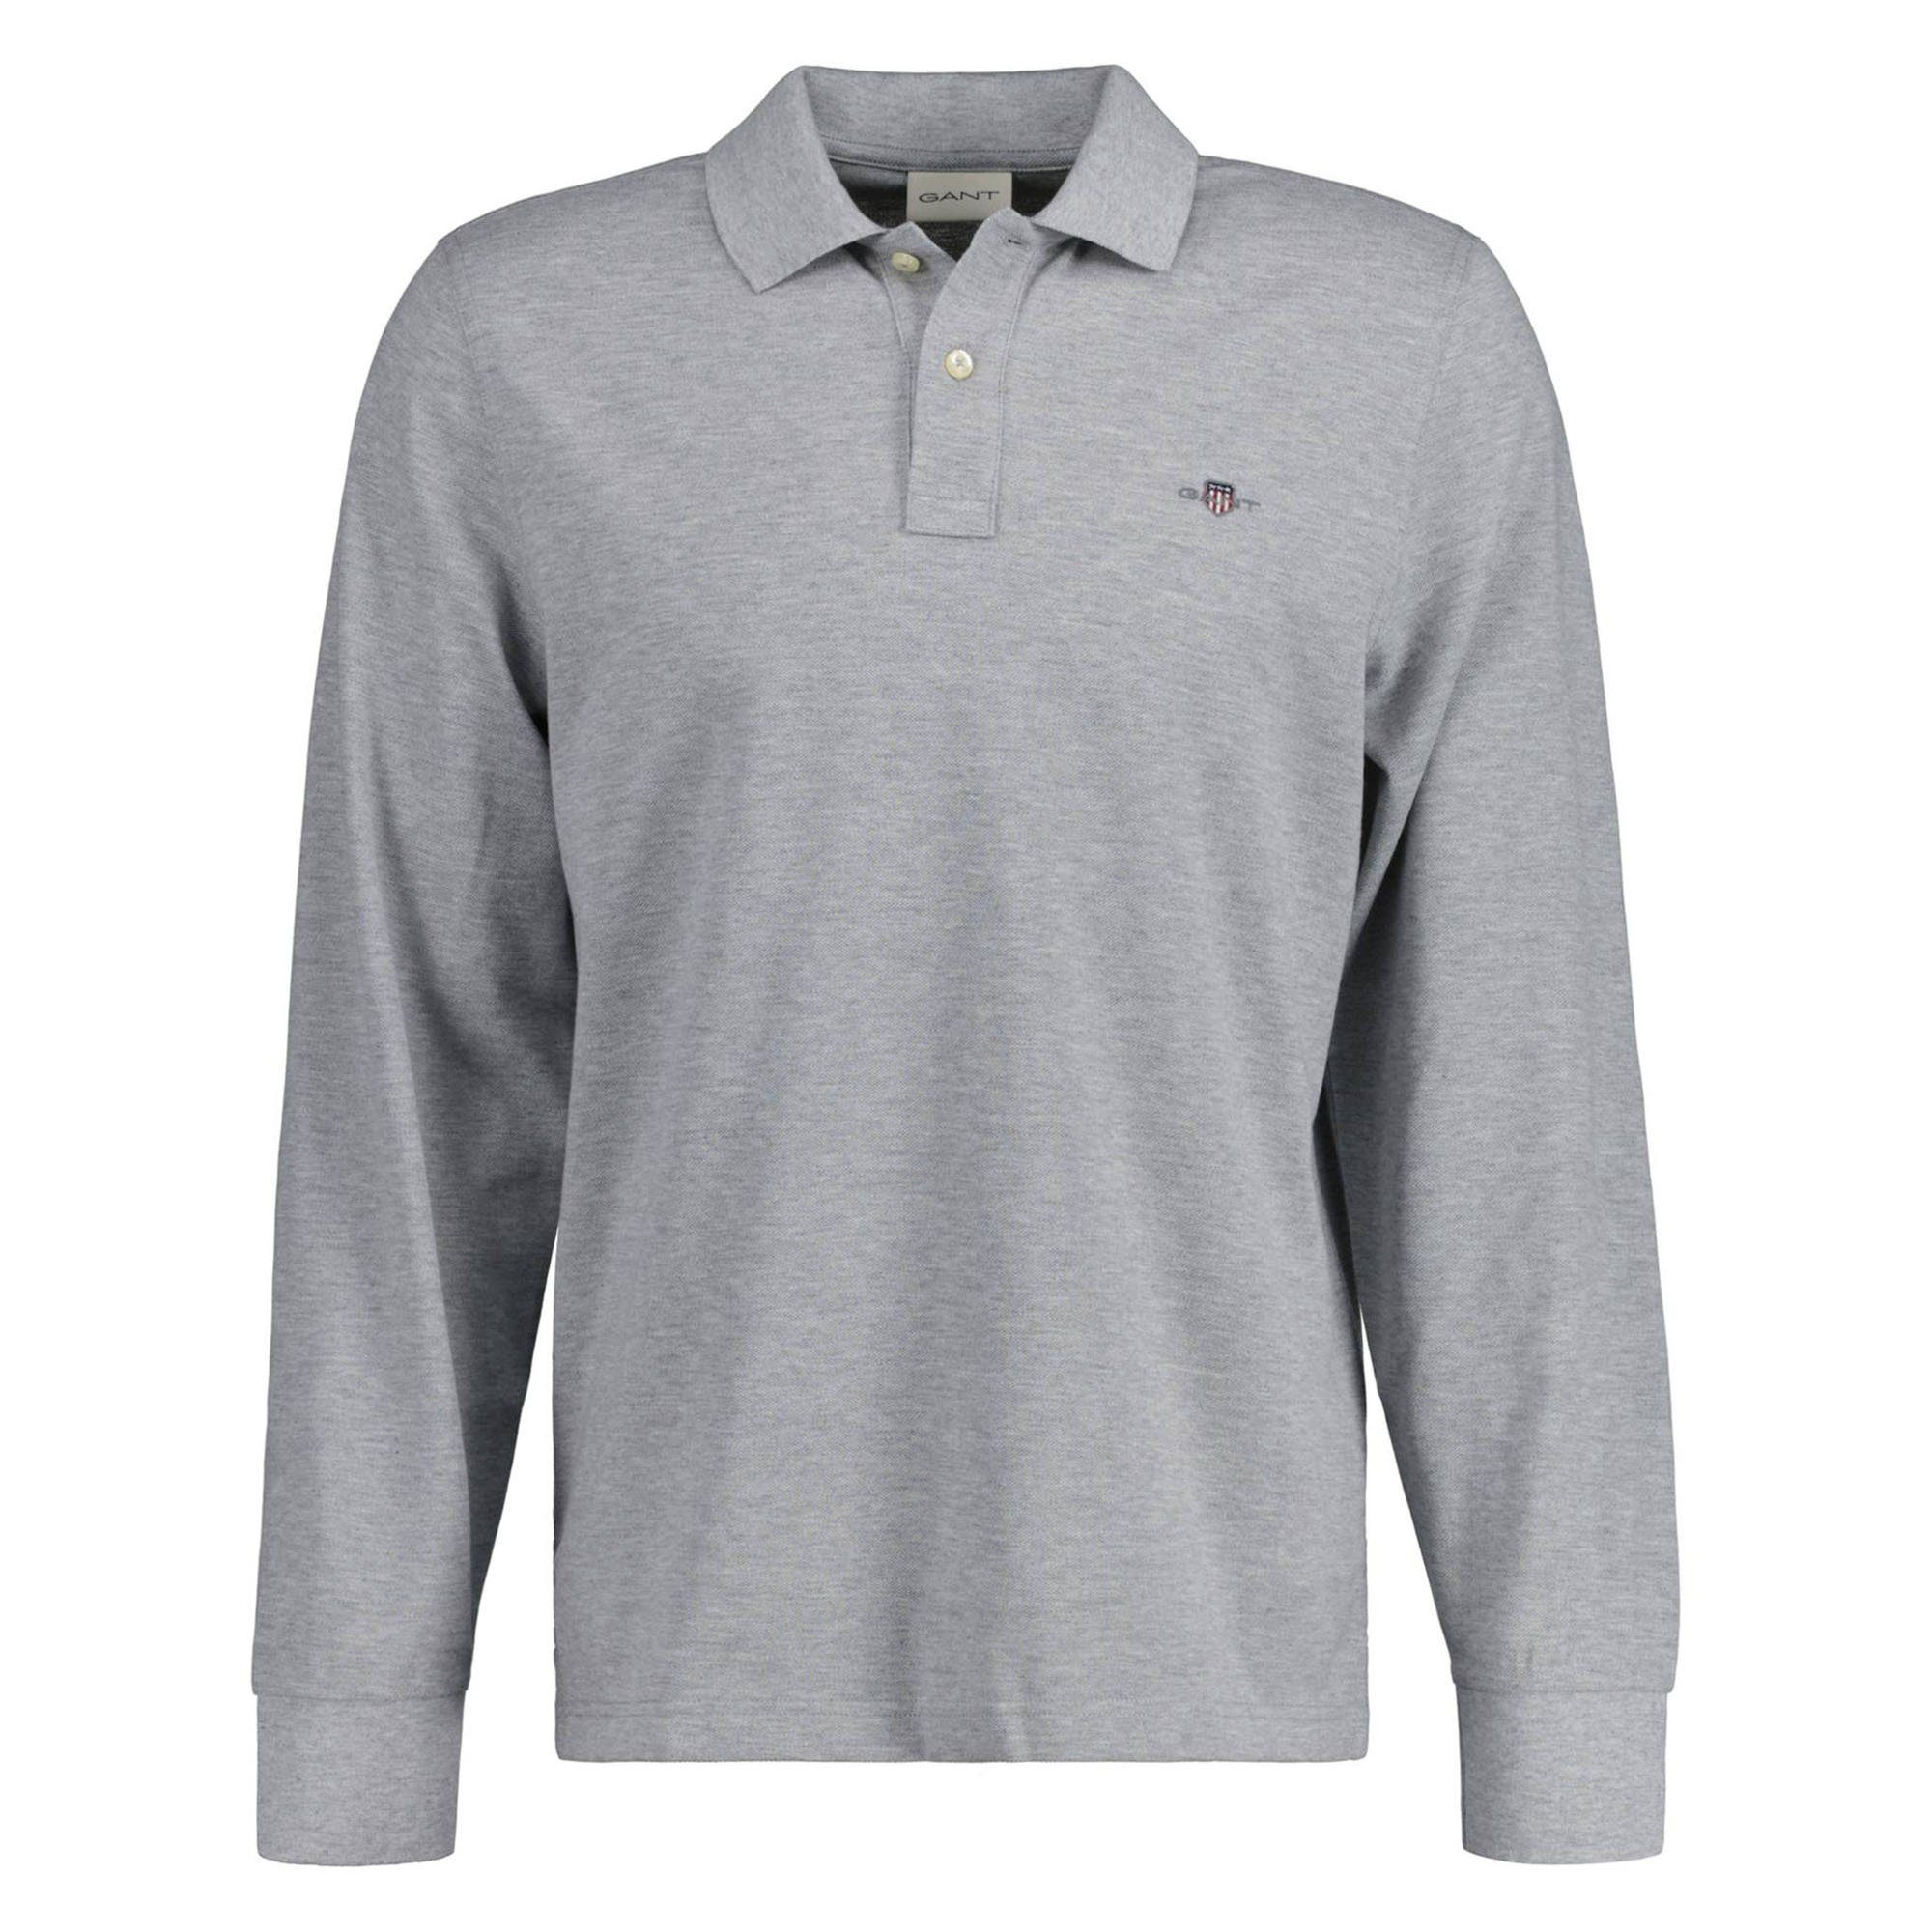 günstiger Verkauf Gant Poloshirt Herren Poloshirt PIQUE REGULAR Grau - LONGSLEEVE SHIELD